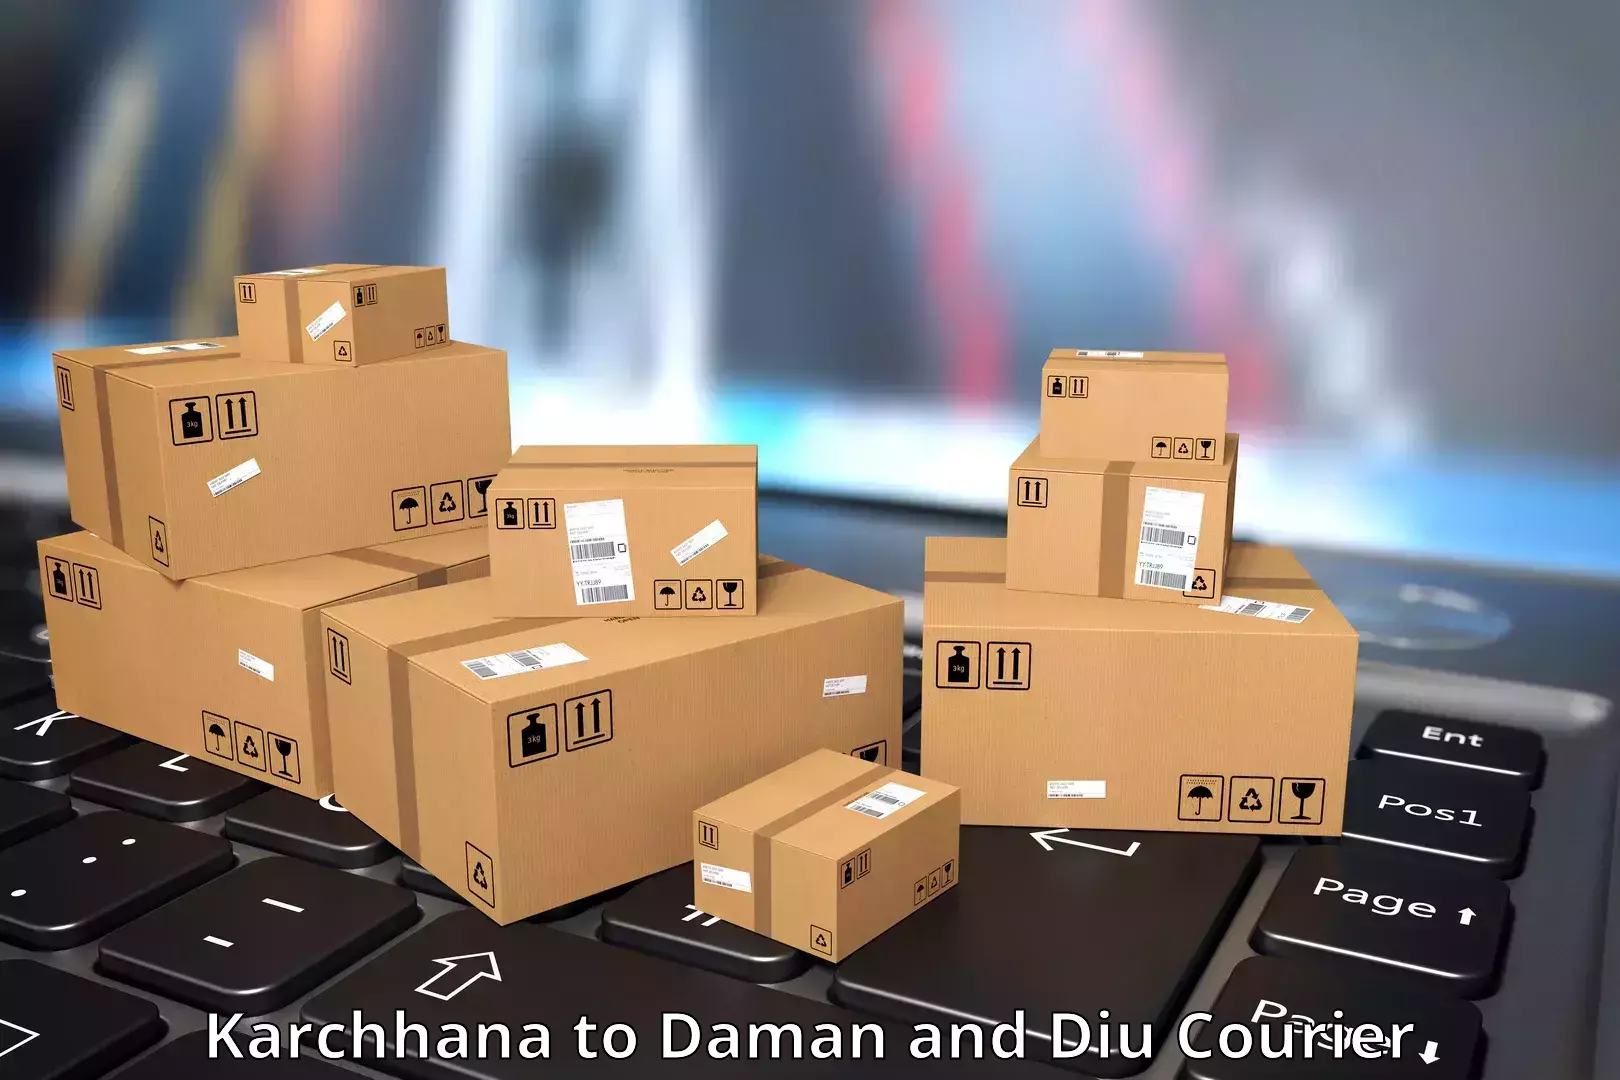 Urgent courier needs Karchhana to Diu